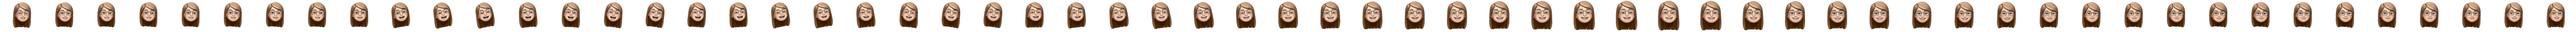 Brunette female memoji with glasses smiling